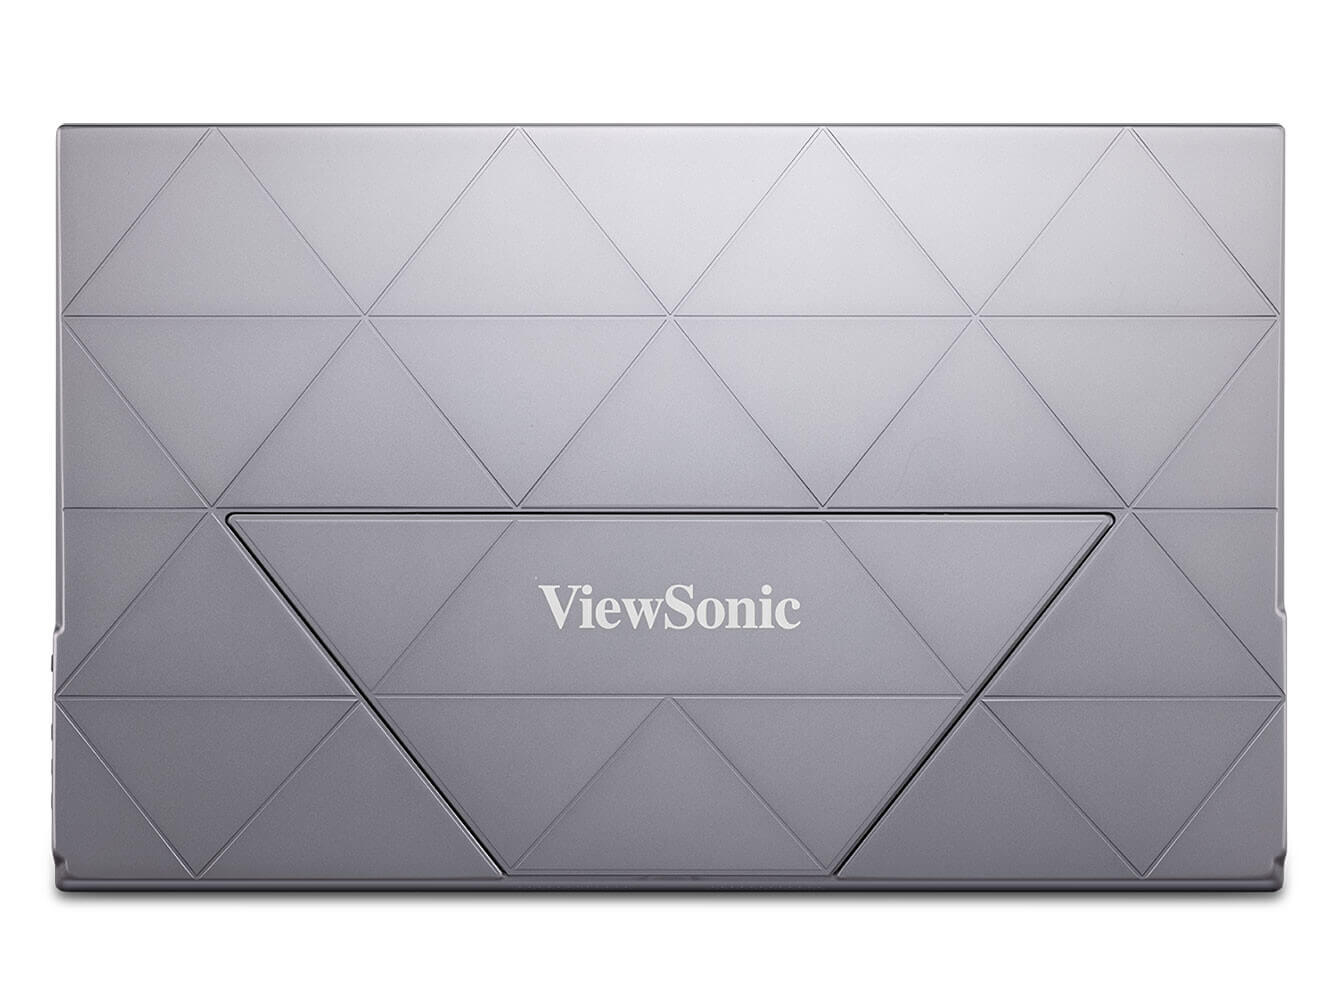 ViewSonic presenta monitor portátil para juegos móviles, de PC y consola